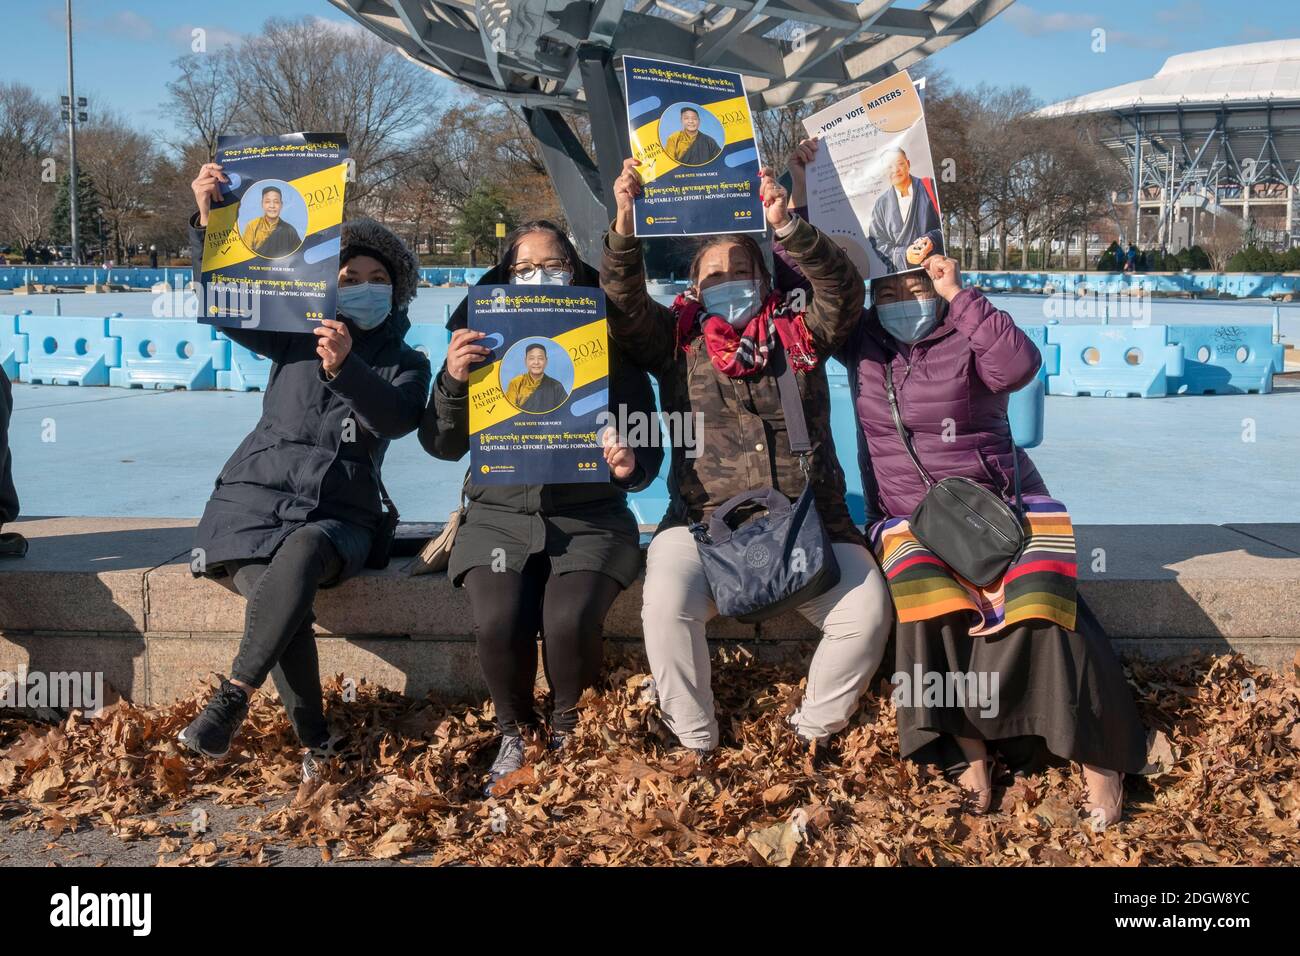 Tibetisch-amerikanische Frauen halten Plakate, die die Kandidatur von Penpa Tsering für die Präsidentin der tibetischen Exilregierung unterstützen. Rallye in Queens NY Stockfoto